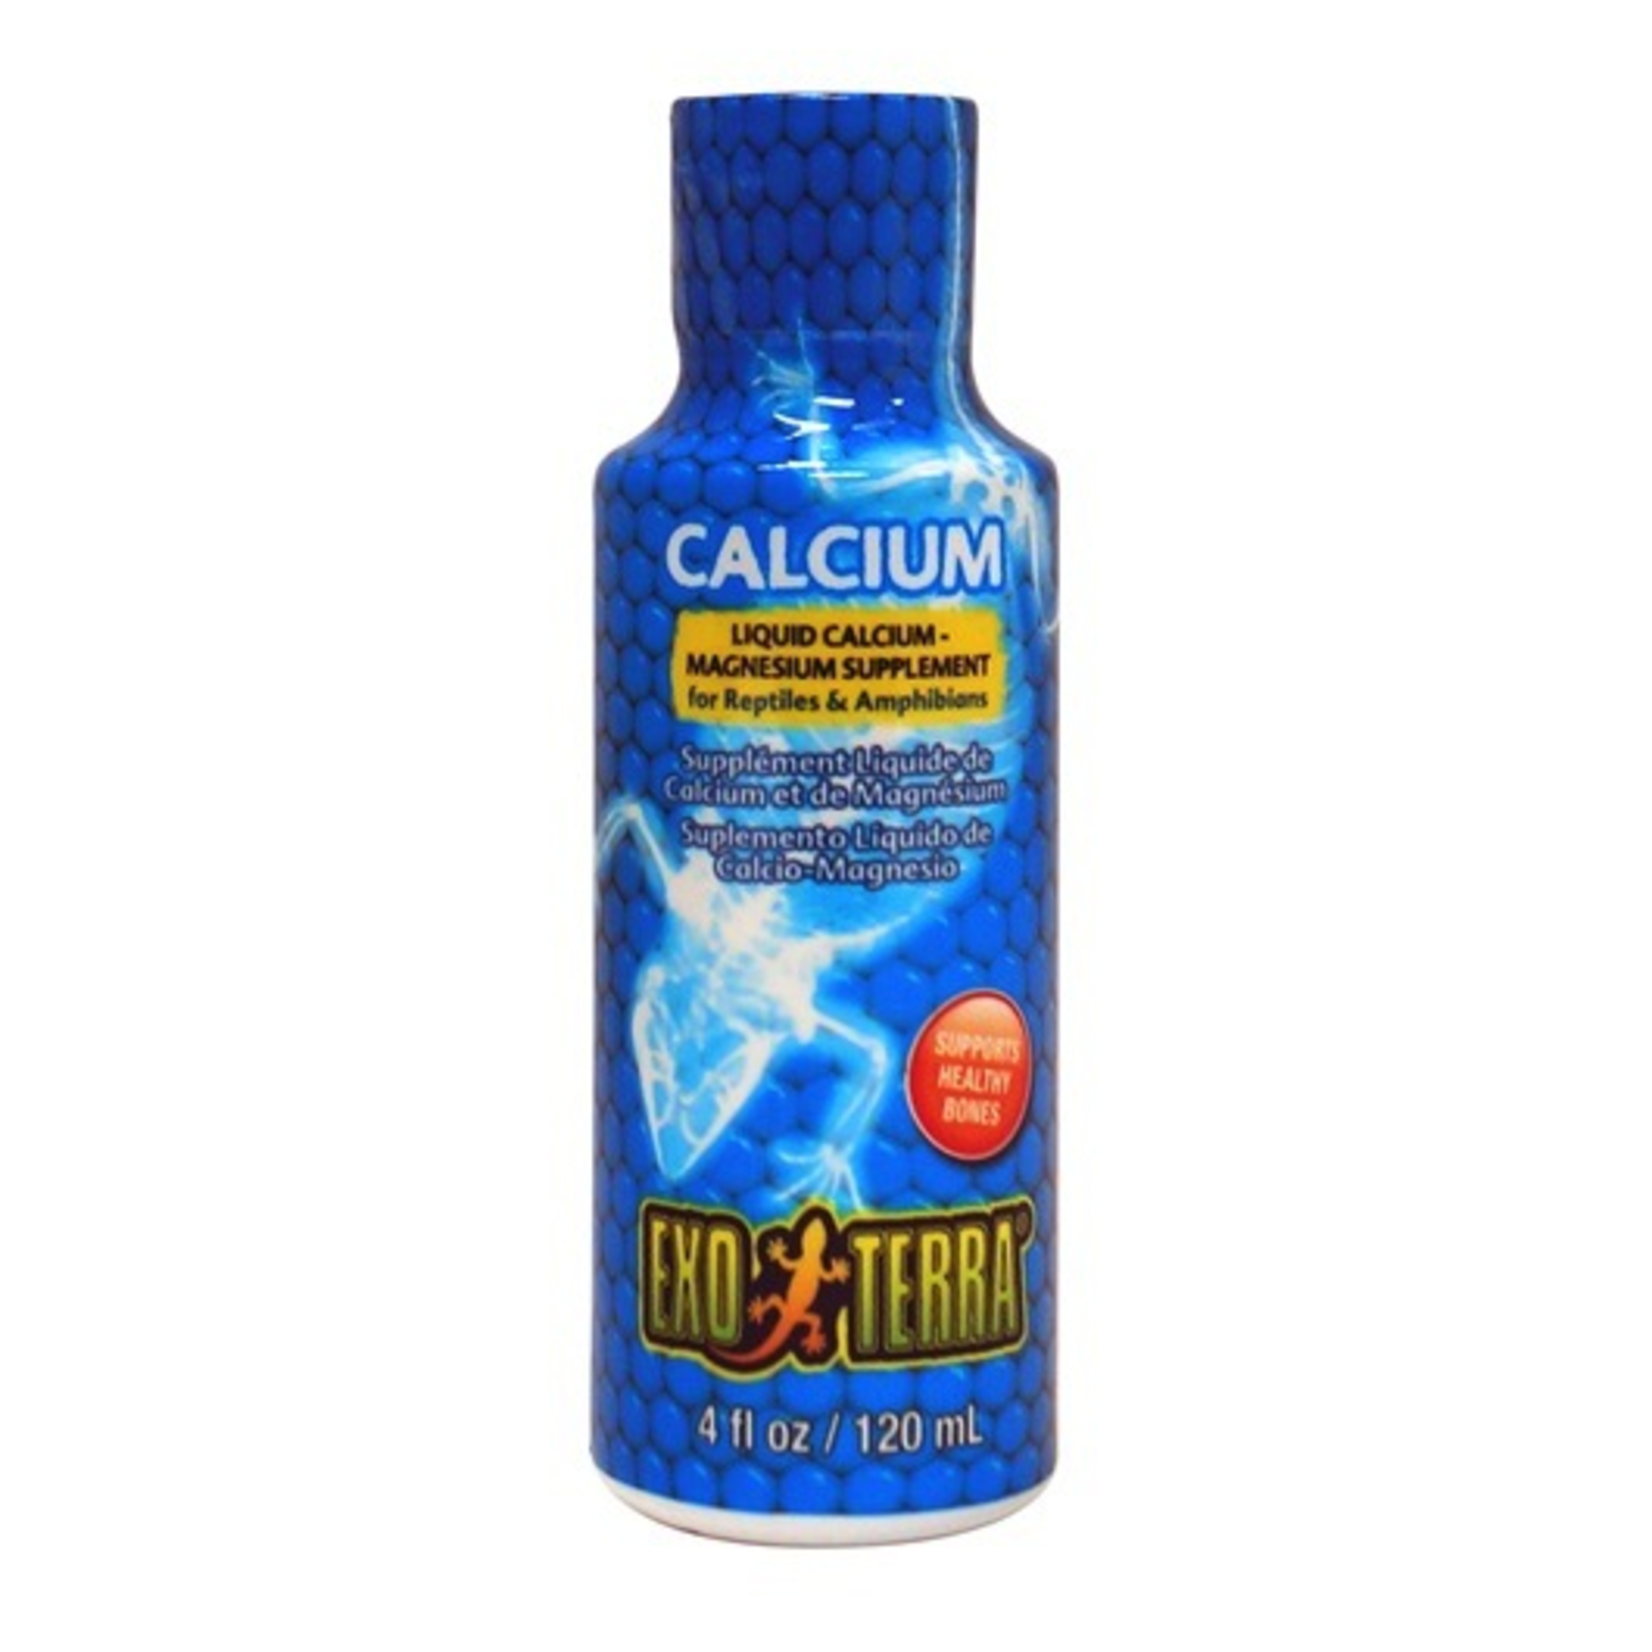 EXO TERRA Exoterra Calcium Liquid Calcium Magnesium Supplement - 120 ml